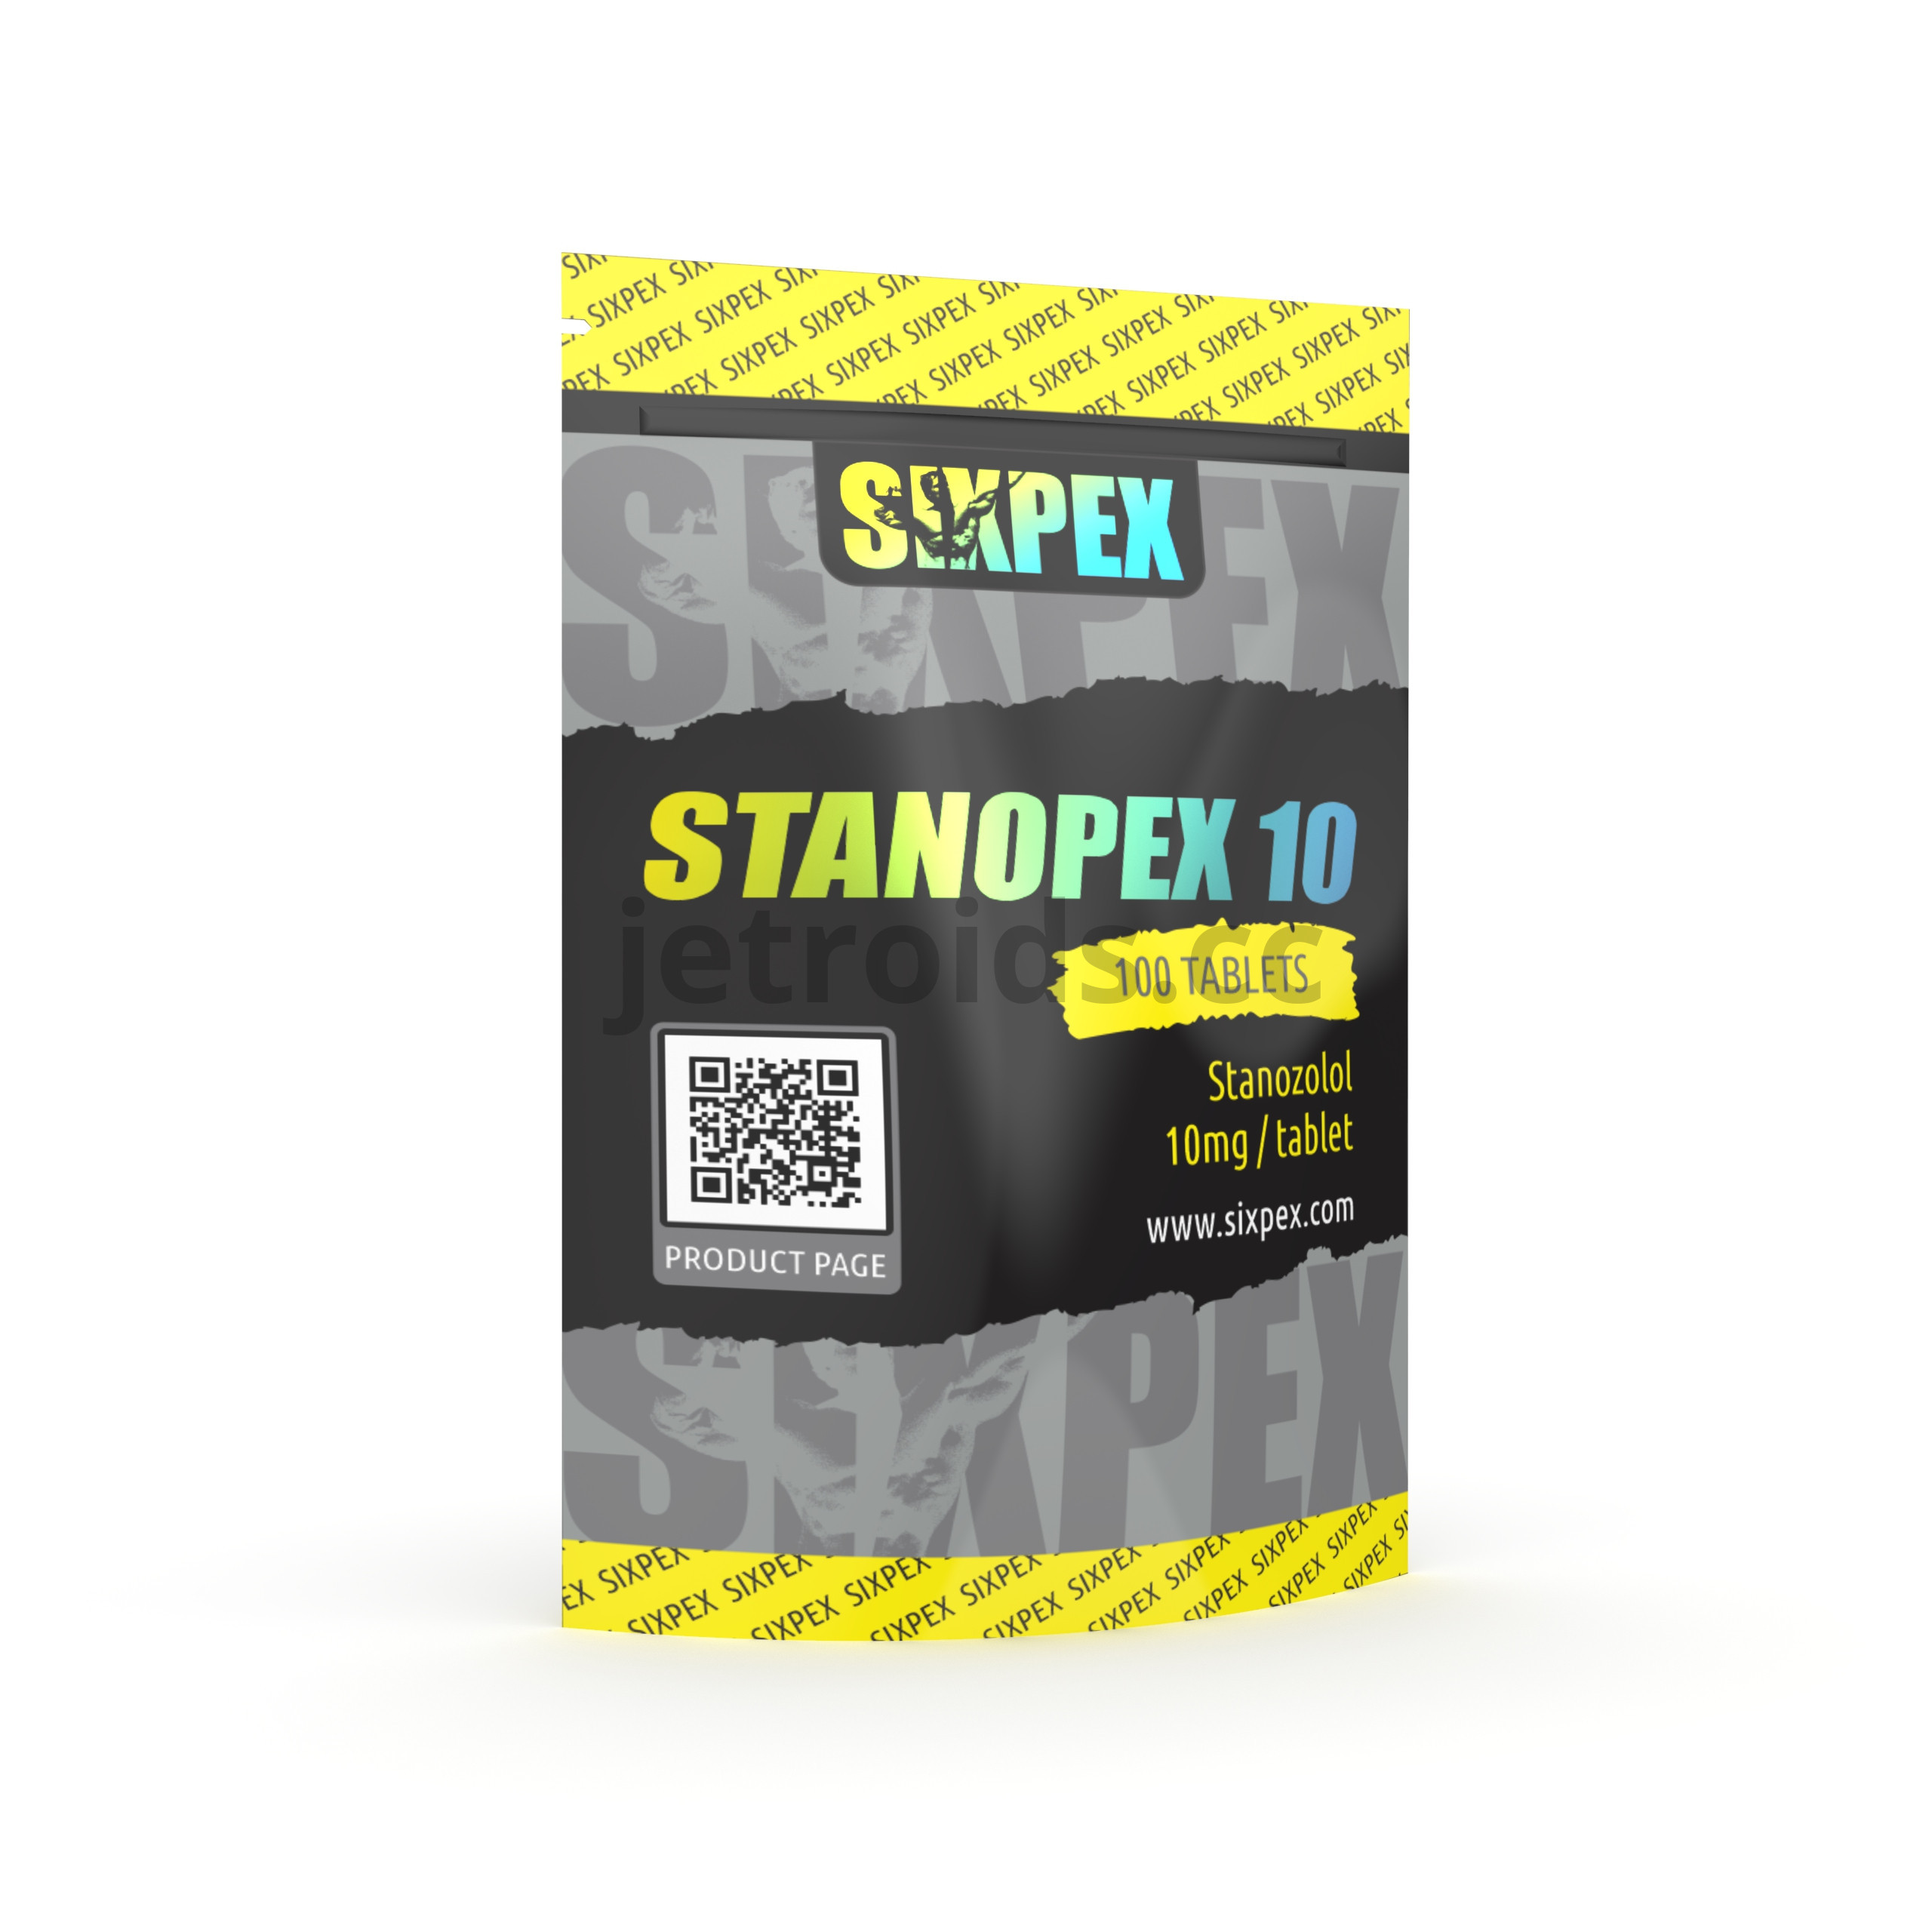 Sixpex Stanopex 10 Product Info